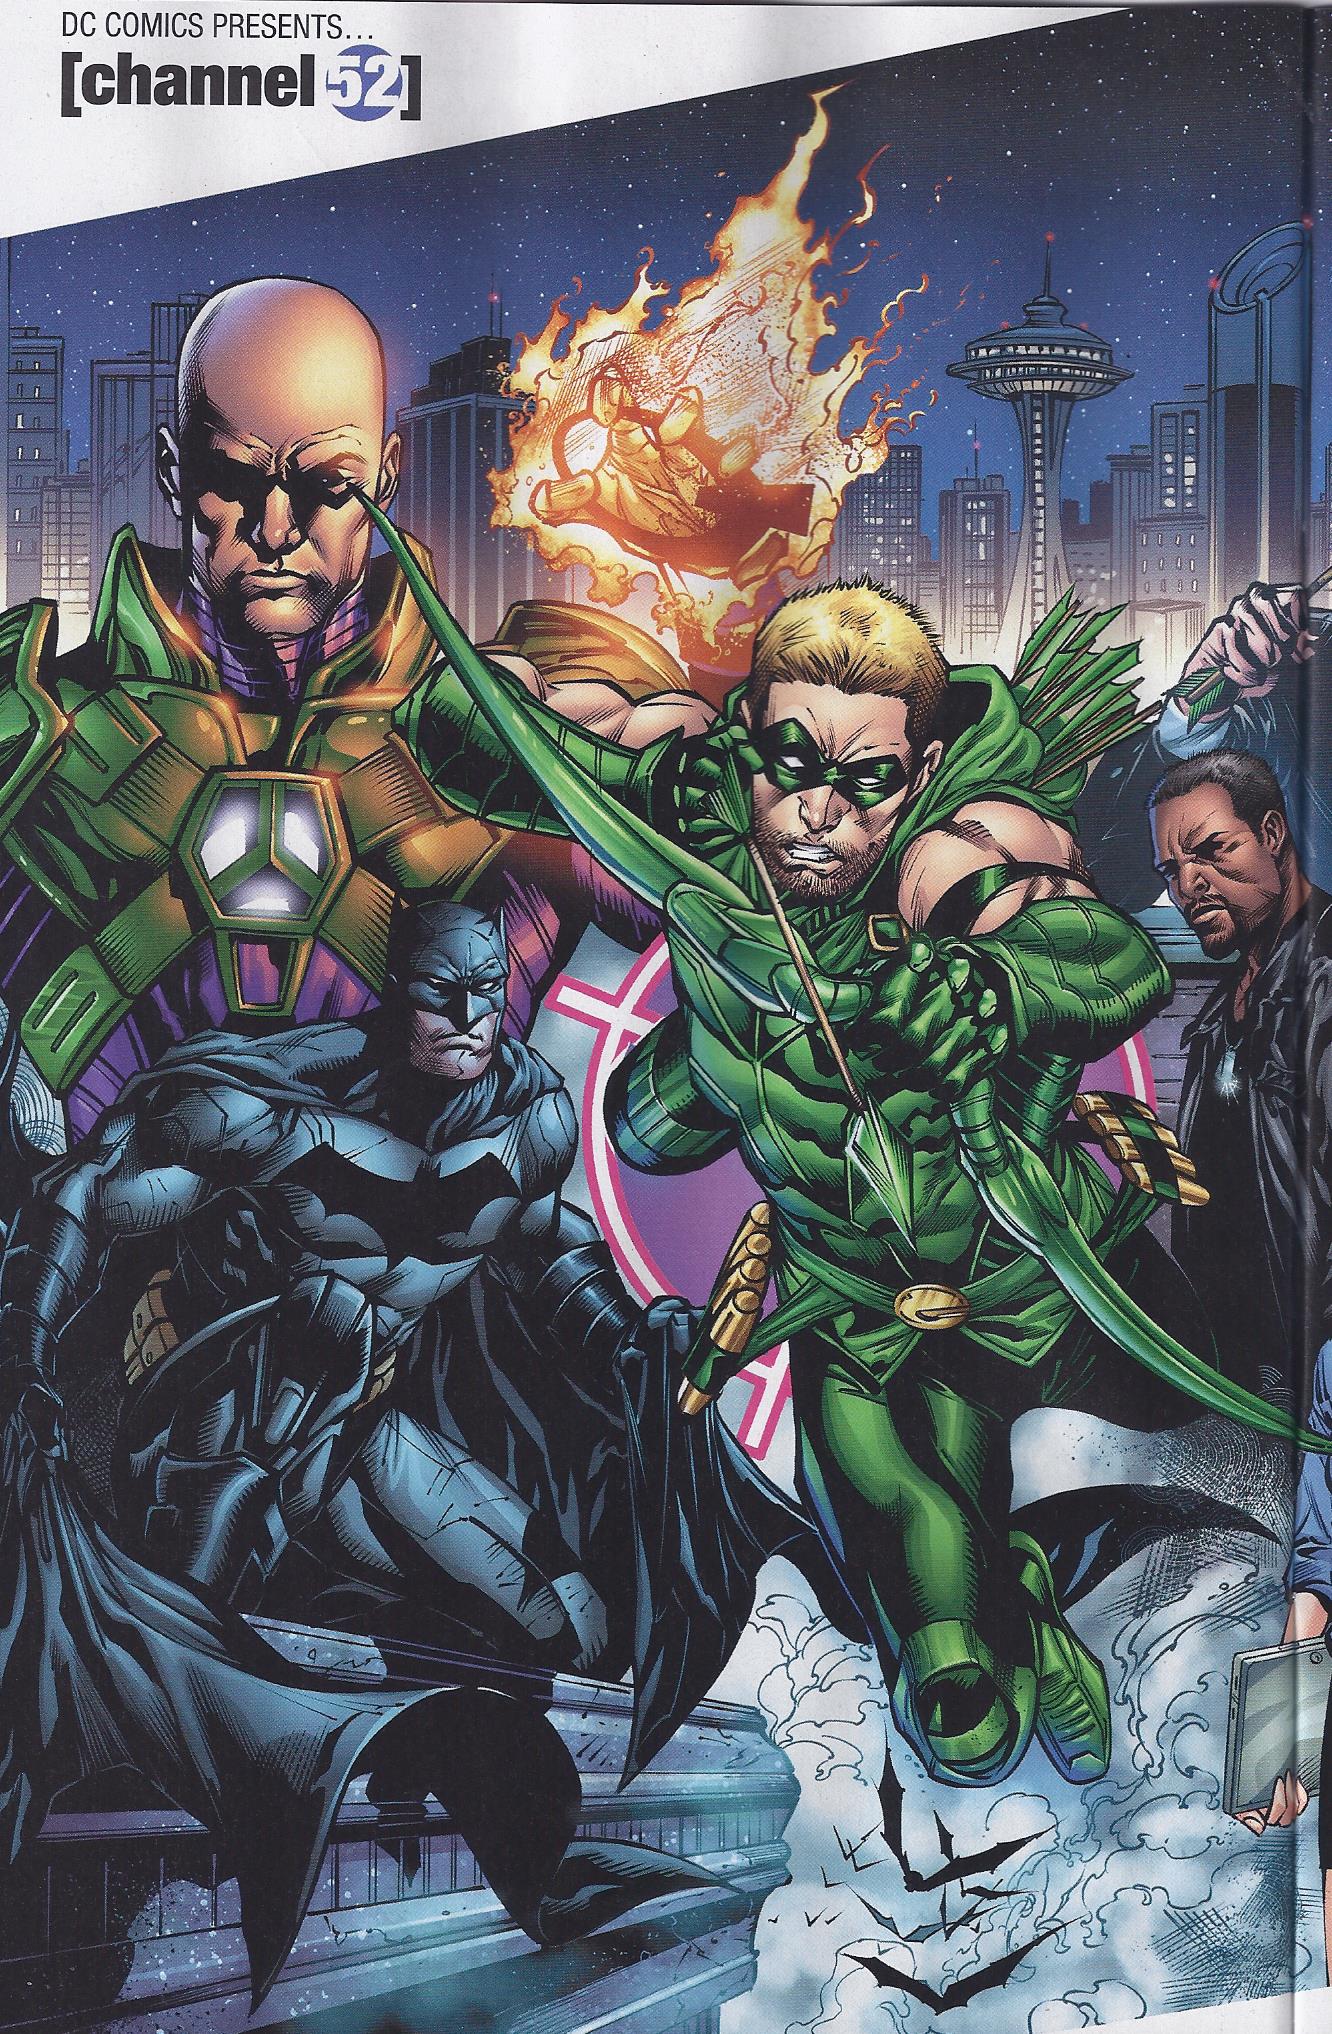 DC-Comics-Presents-Channel-52-Green-Arro